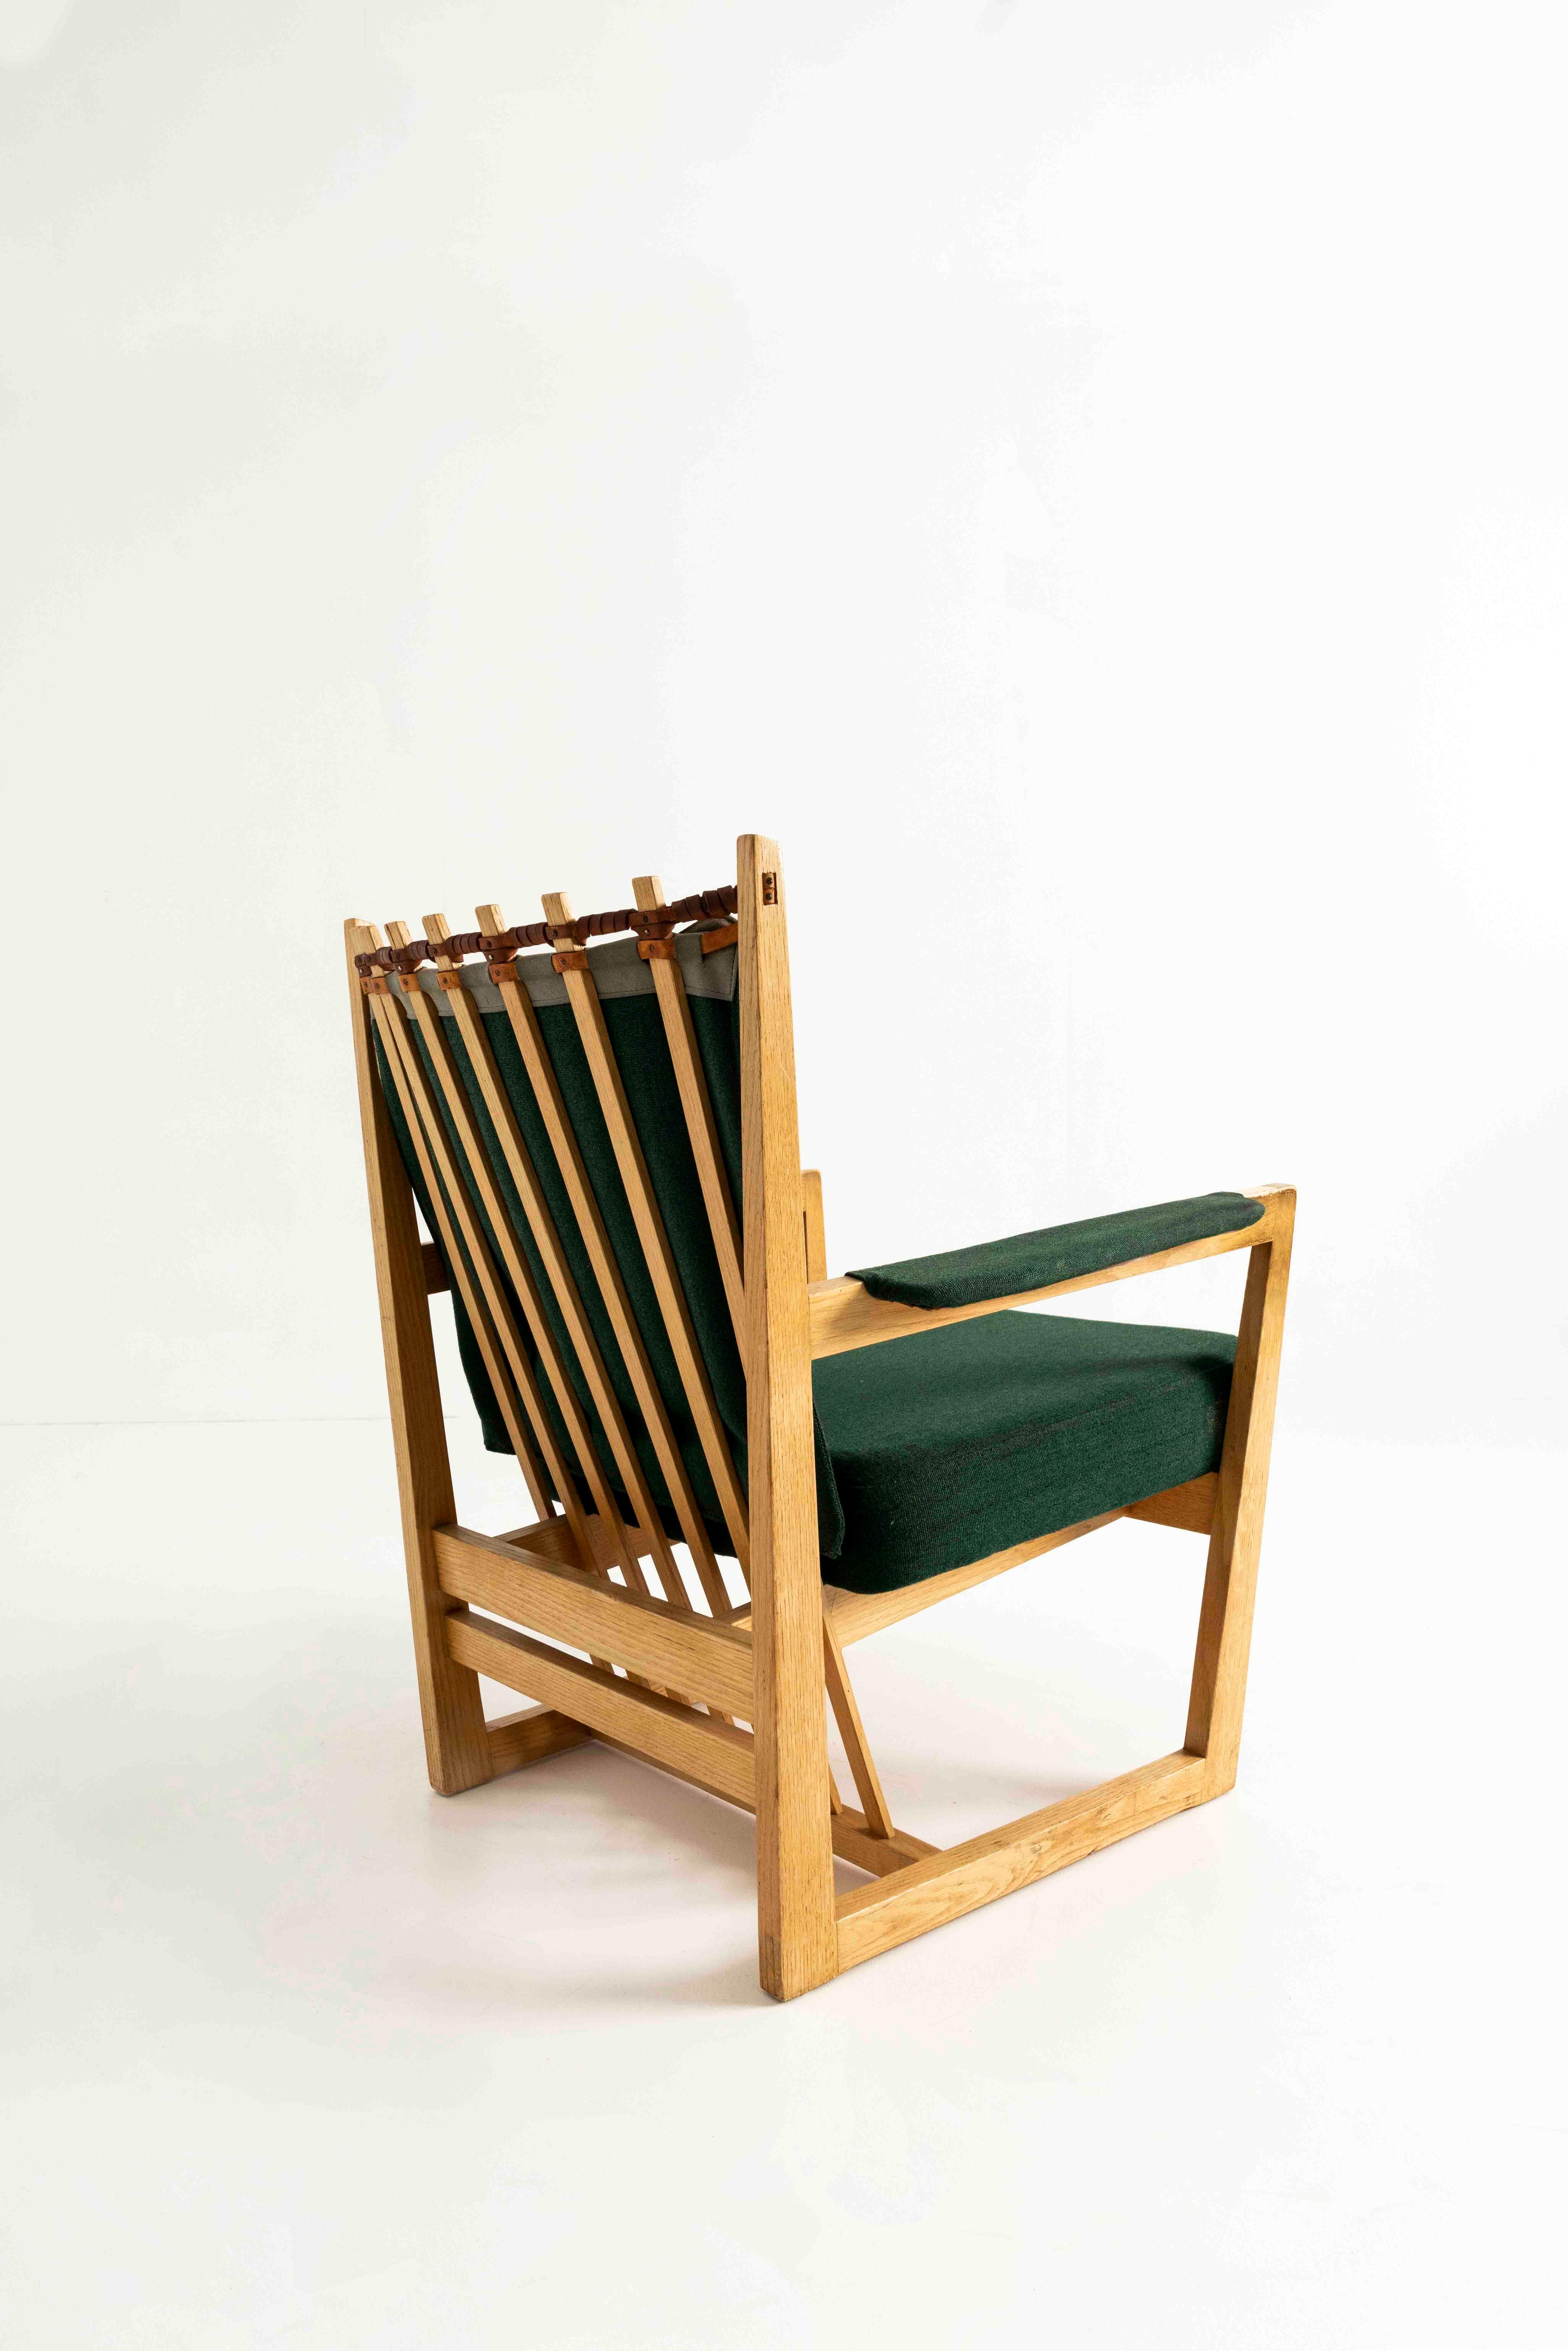 Rare Prototype de chaise Easy par Albert Haberer des années 1950, Allemagne. Seuls trois d'entre eux ont été fabriqués, et la chaise provient de l'ancienne maison d'Albert Haberer. Finalement, cette chaise n'a jamais été produite. Vous pouvez voir